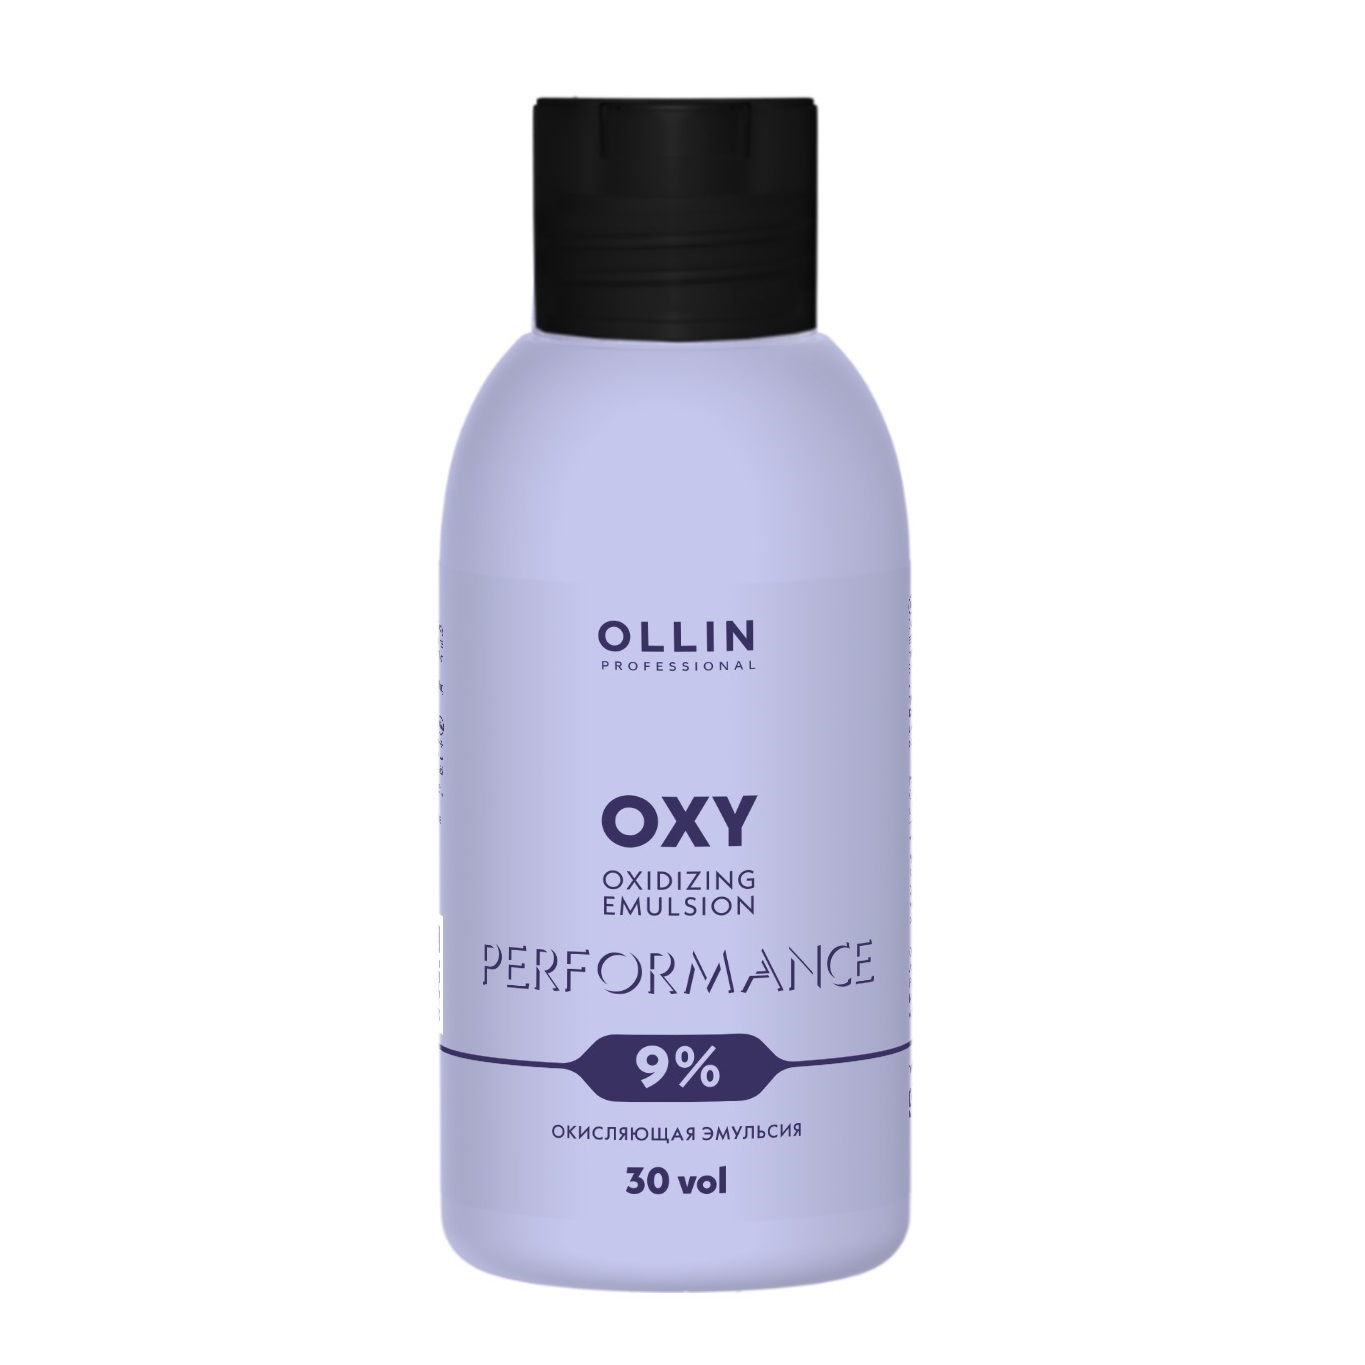 Ollin Professional Окисляющая эмульсия 9% 30 vol, 90 мл (Ollin Professional, Performance) набор ollin окисляющая эмульсия performance oxy 20 vol 6% 90 мл 3 шт